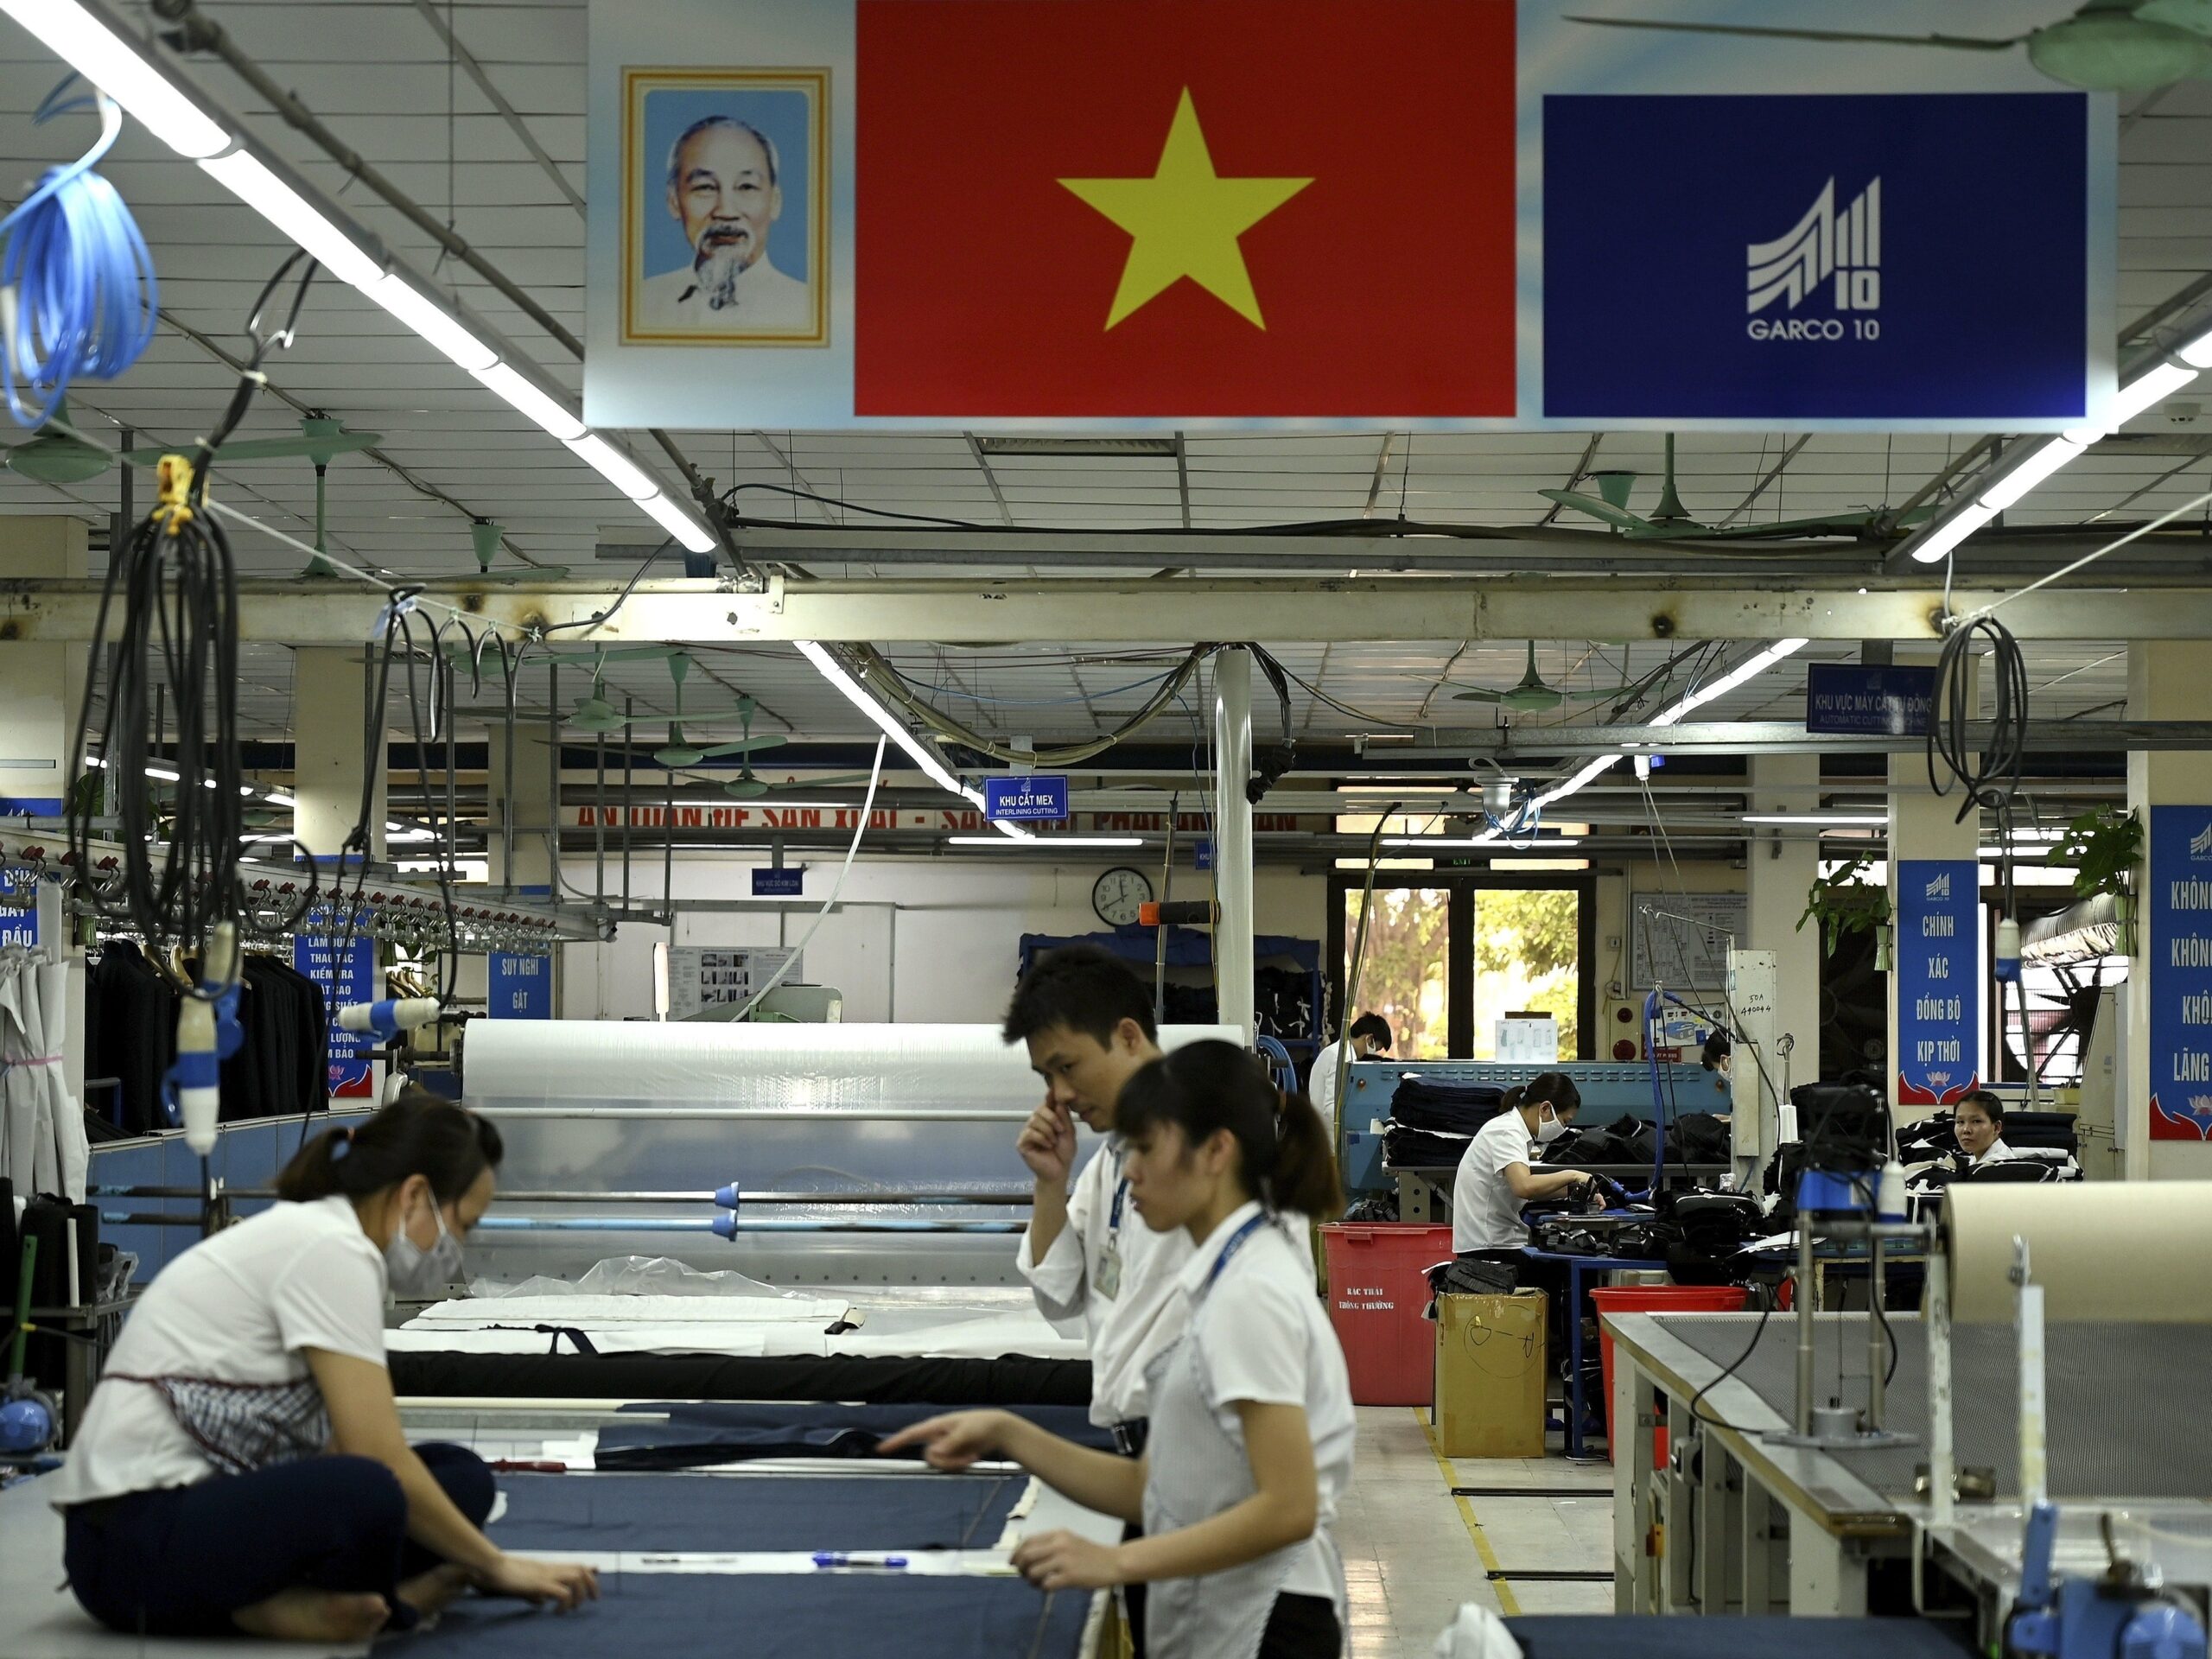 Werknemers van een kledingfabriek werken in een fabriek in Hanoi, Vietnam.